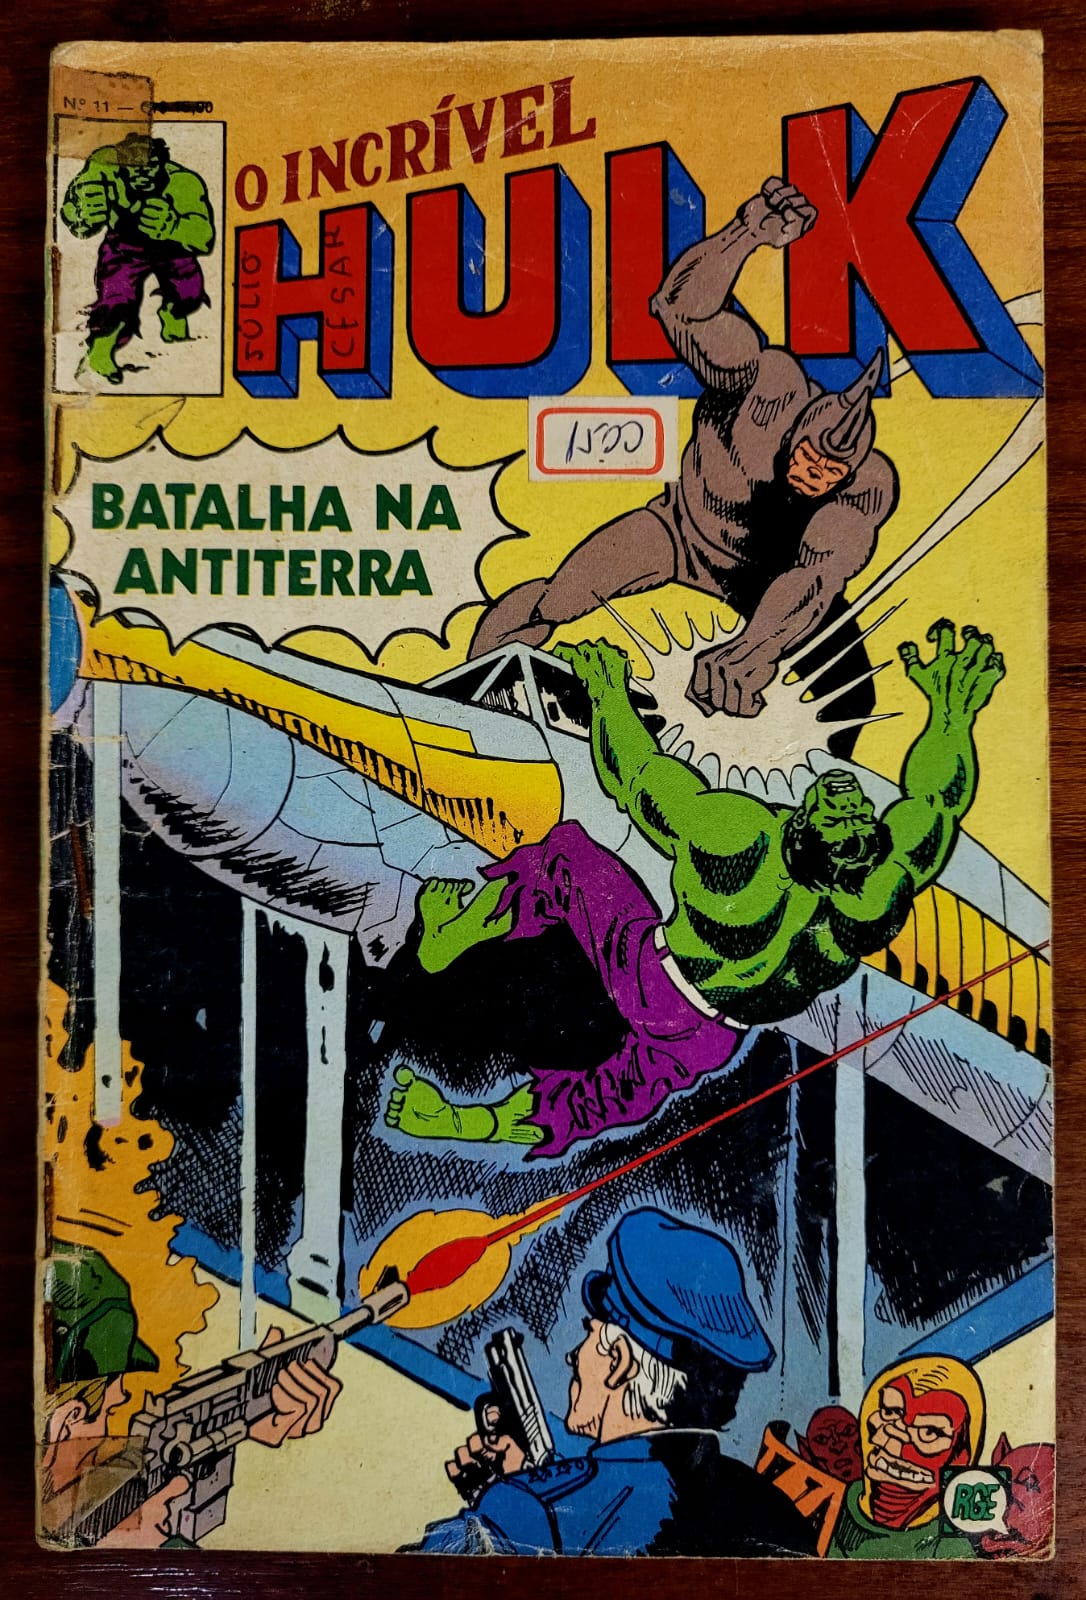 O Incrivel Hulk 11 a Casa do Colecionador